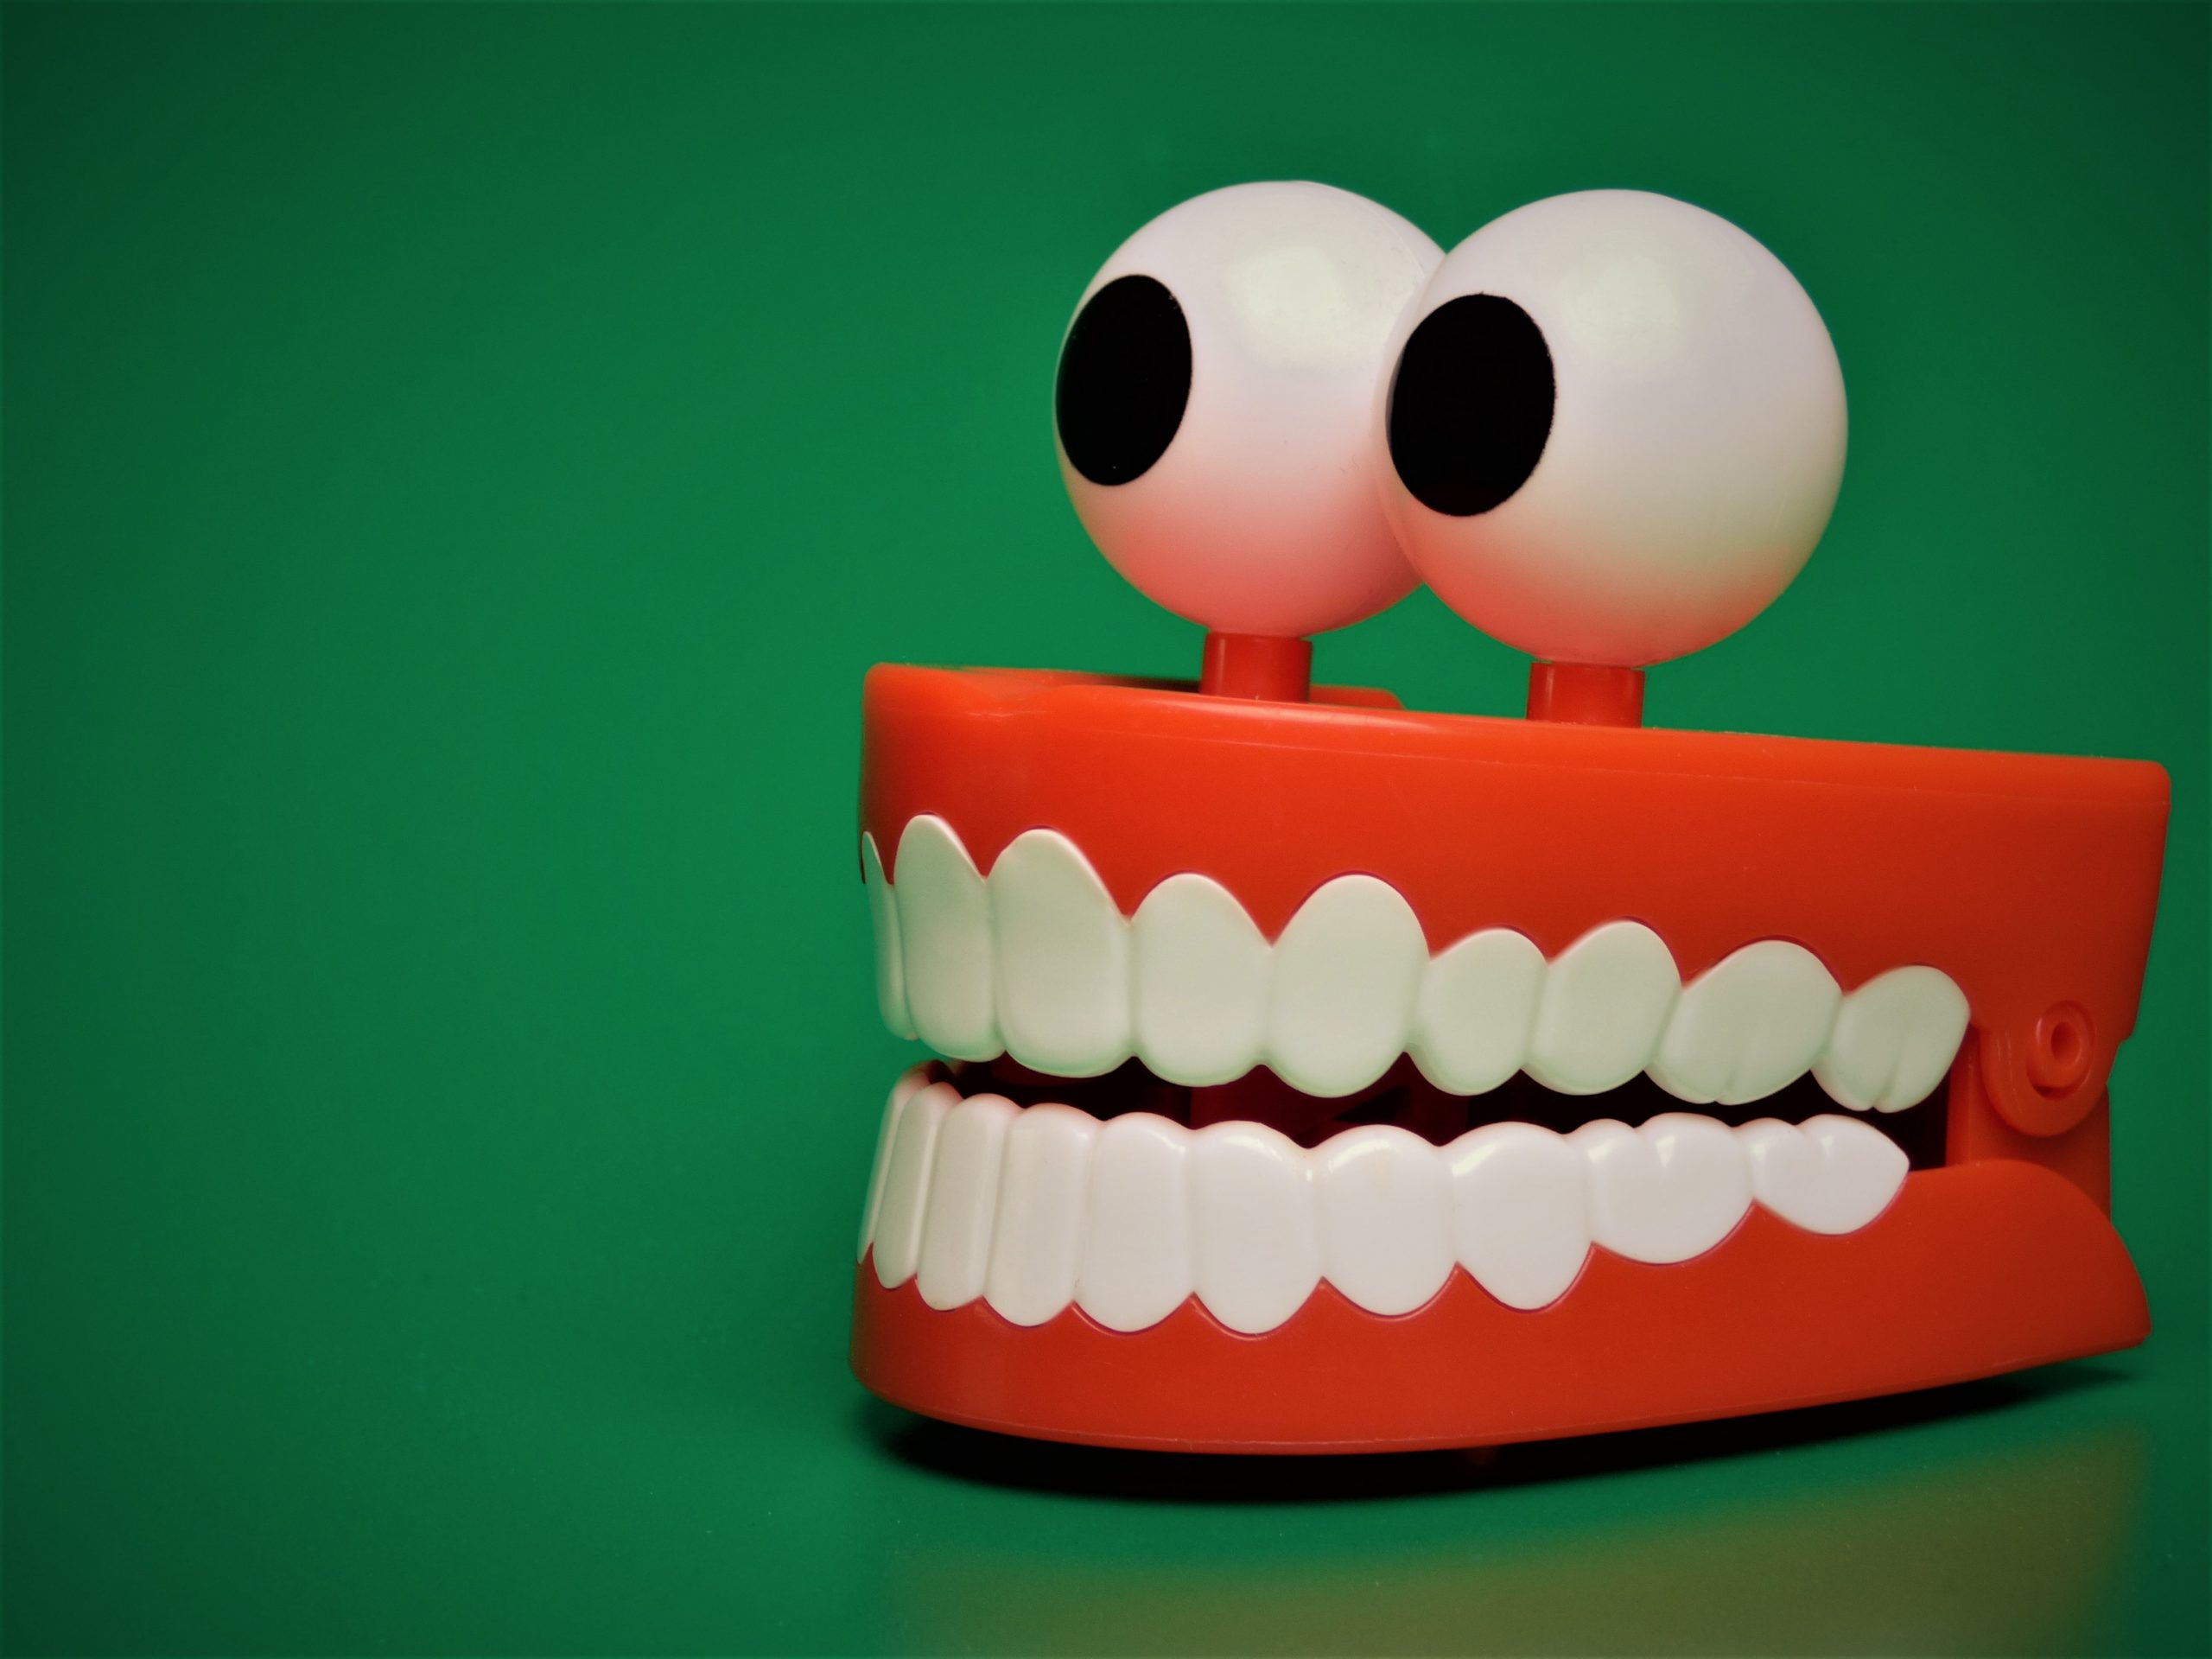 дентофобия - это страх стоматолога у детей и взрослых